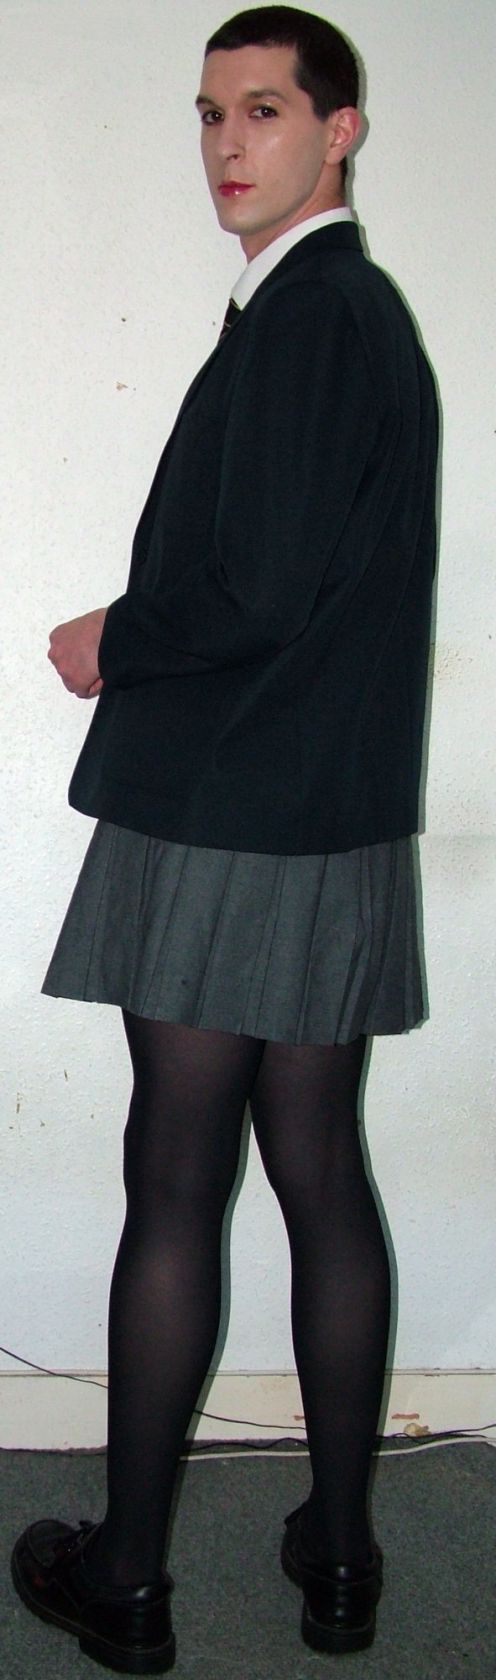 School uniform - original - 4810065350